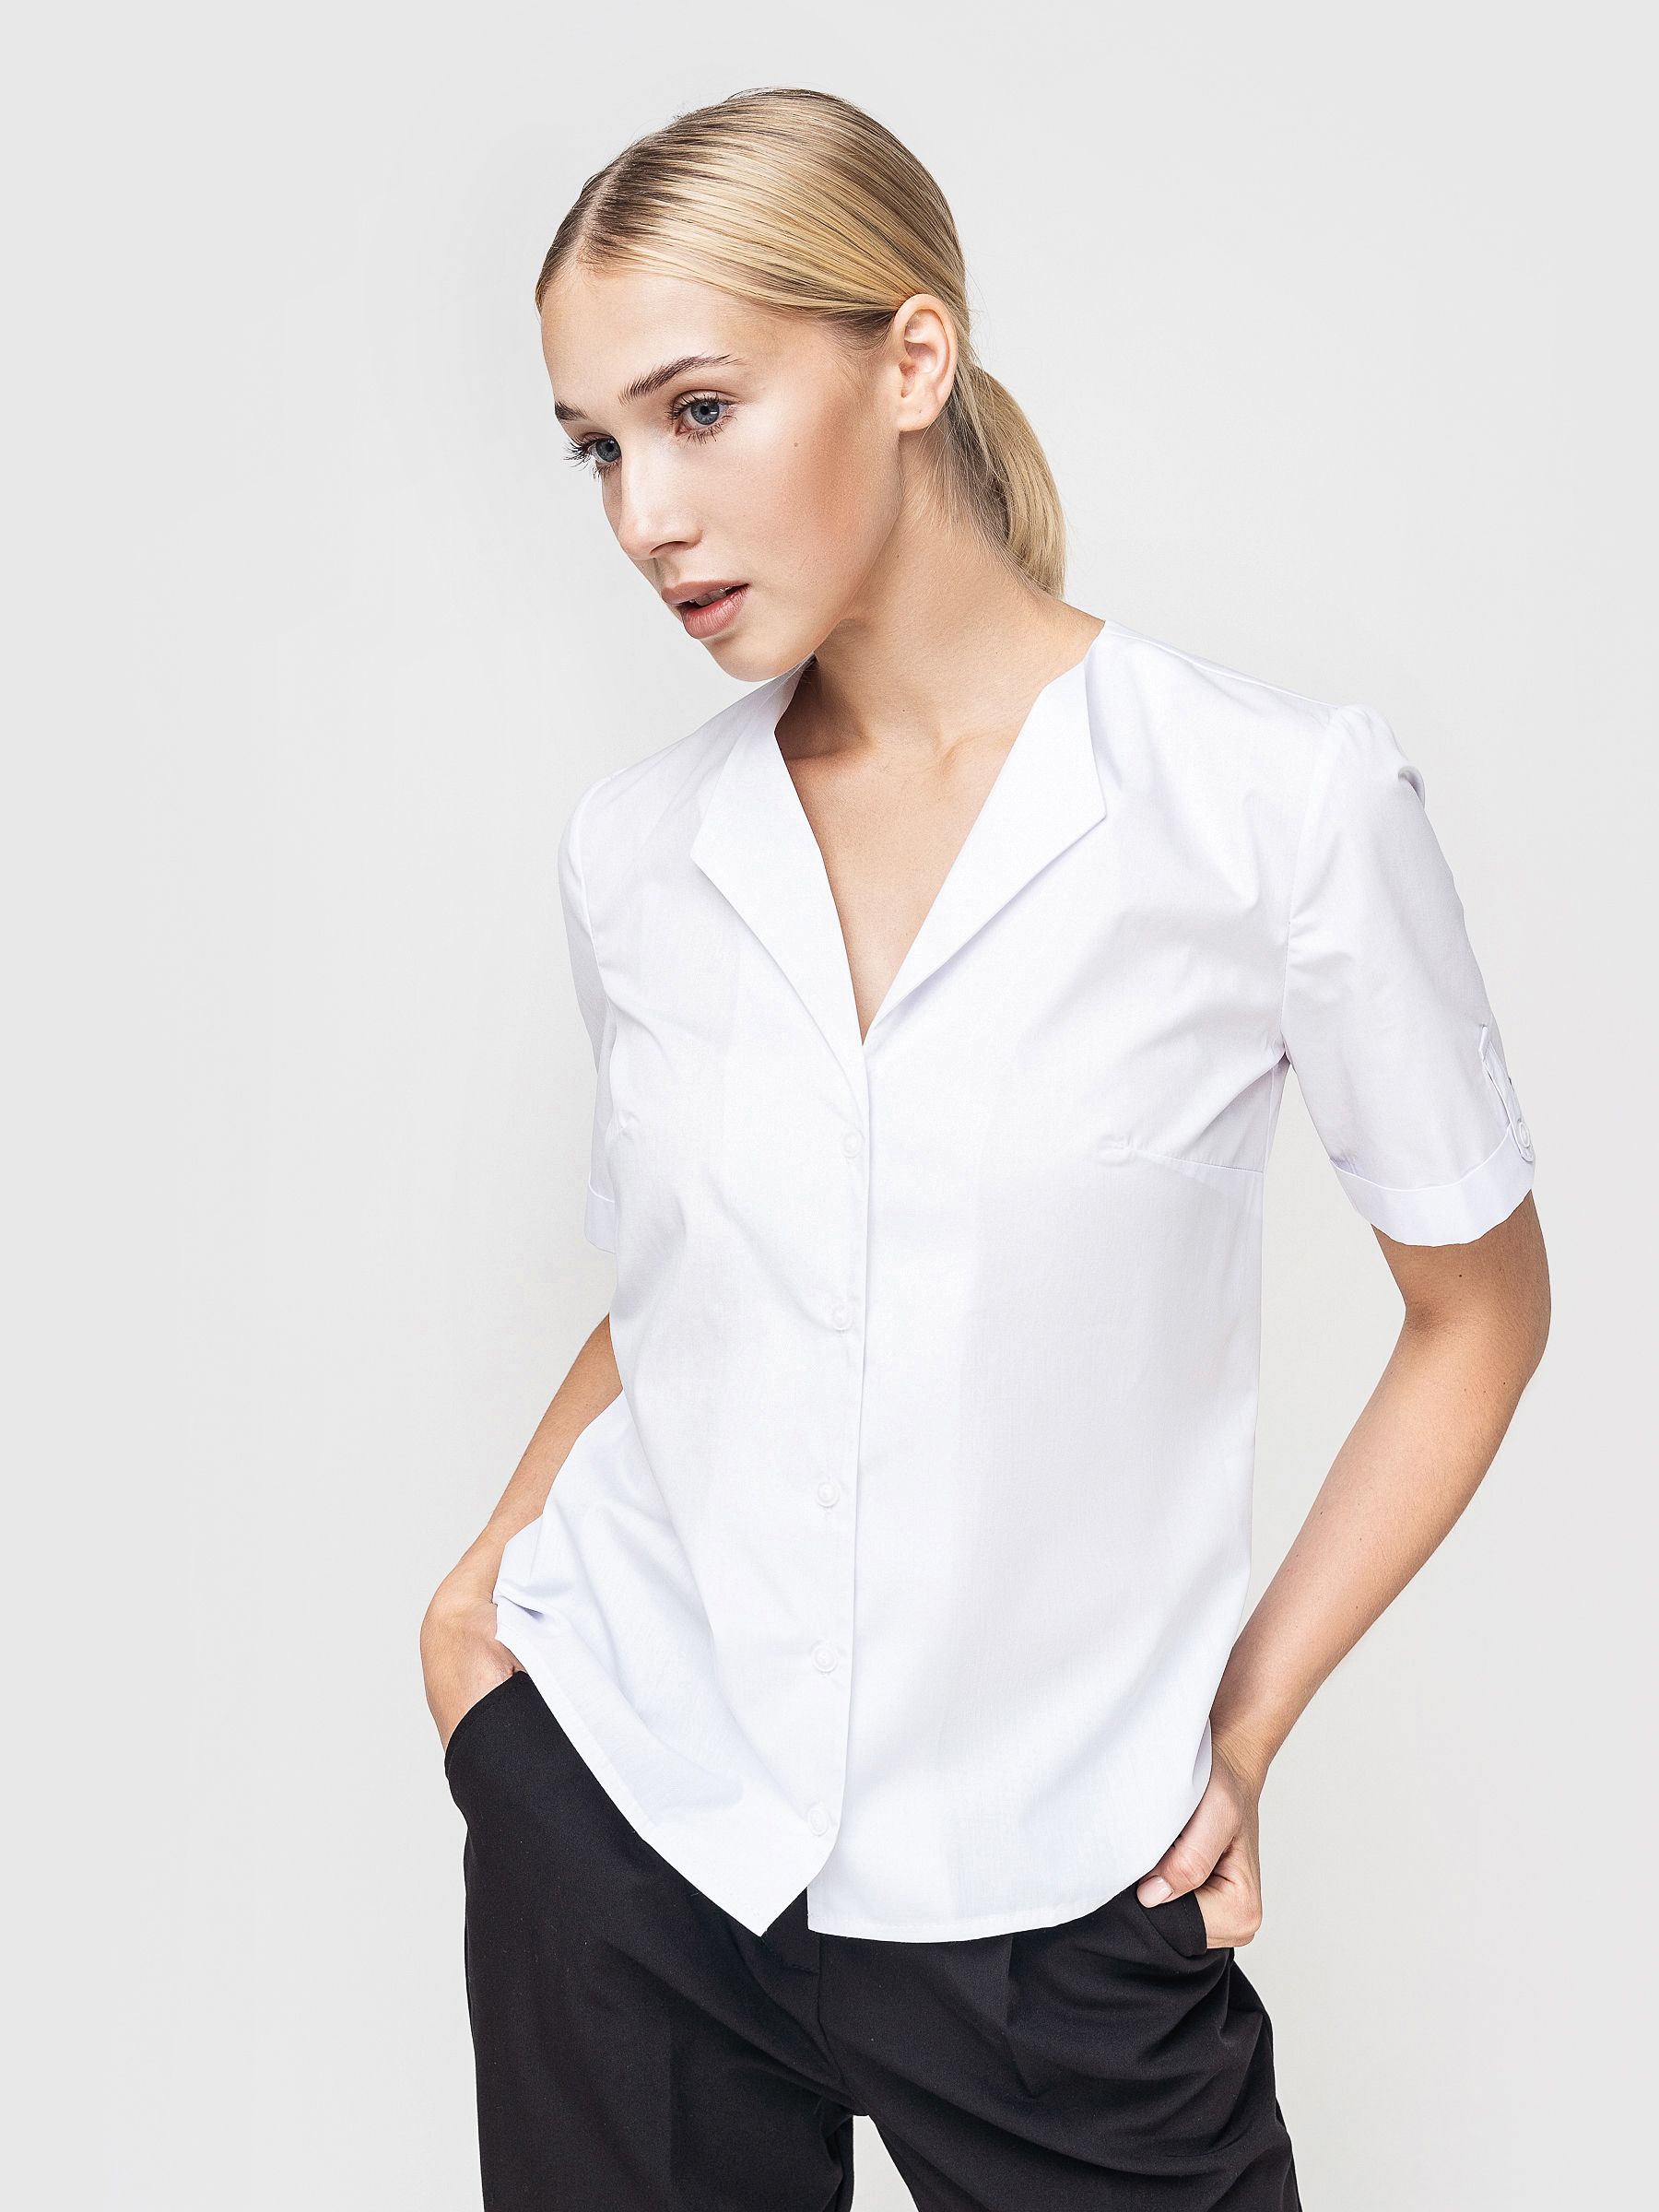 Рубашка женская AM One 6014/0 белая 48 RU